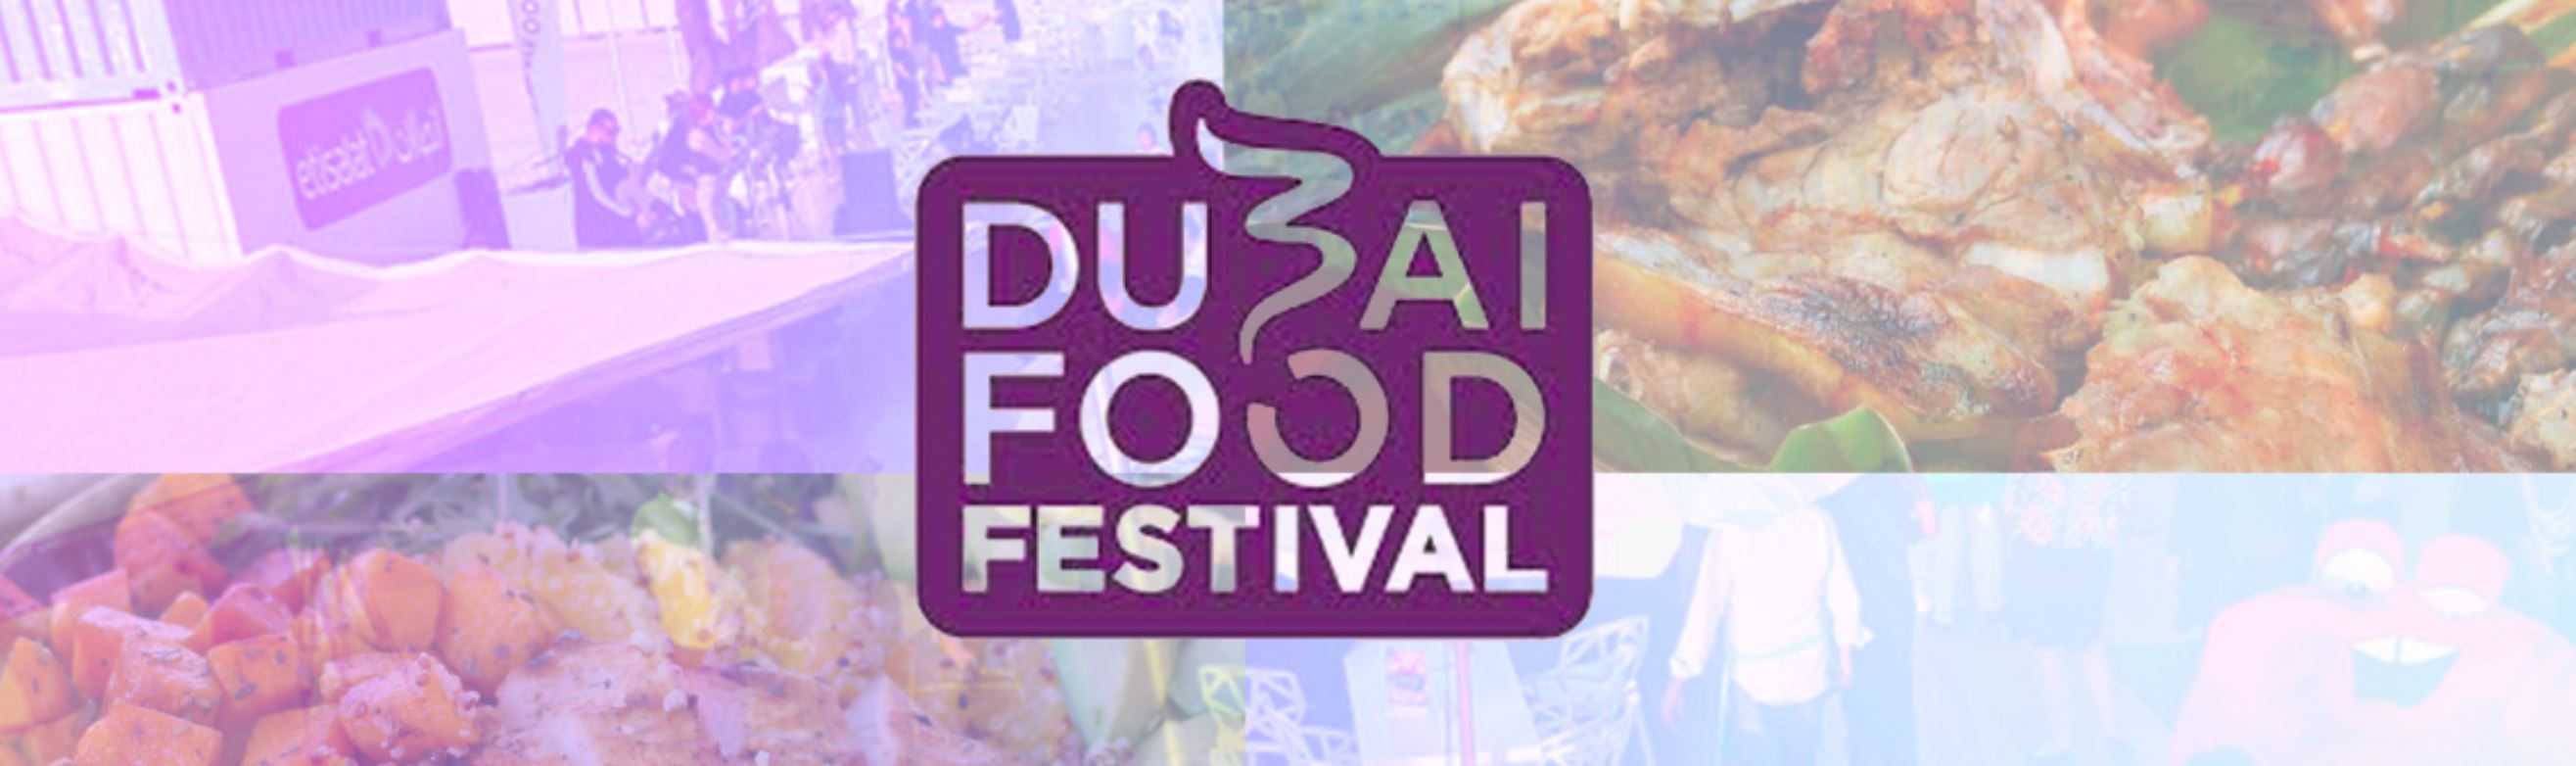 Dubai Food Festival 2020